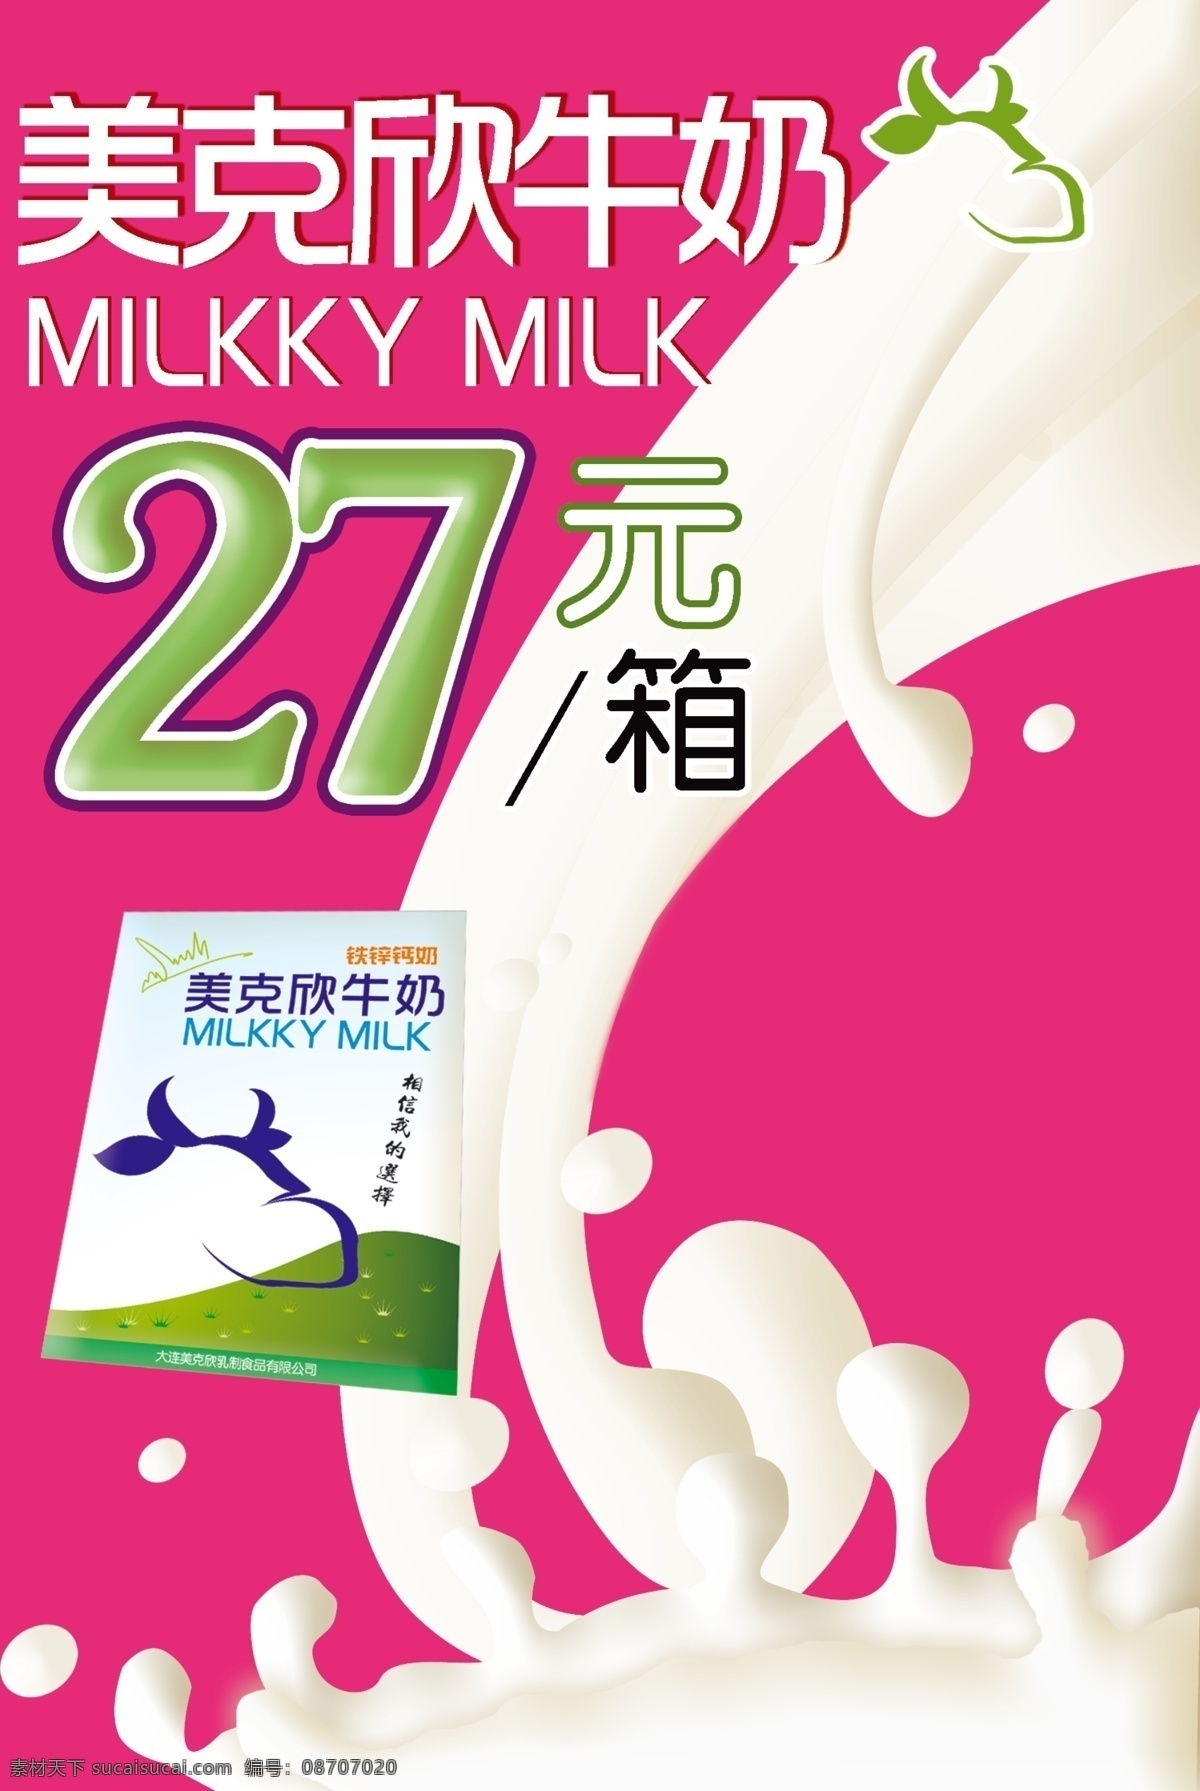 牛奶招贴 宣传单 纯牛奶 广告设计模板 源文件库